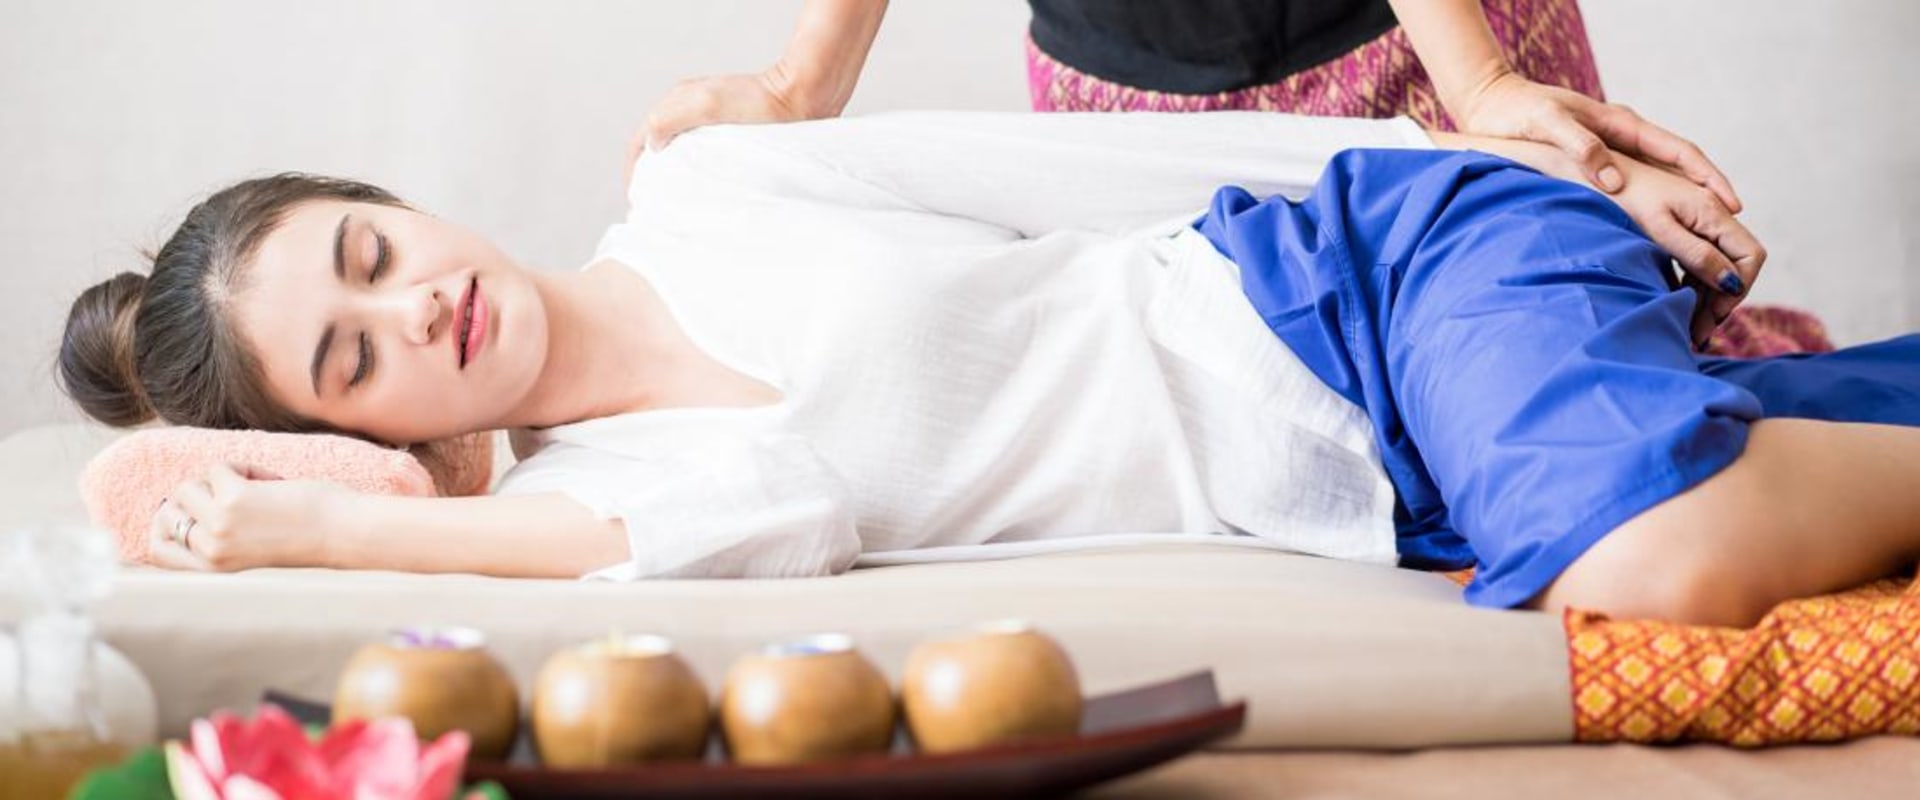 Ist eine thailändische massage besser als eine normale massage?